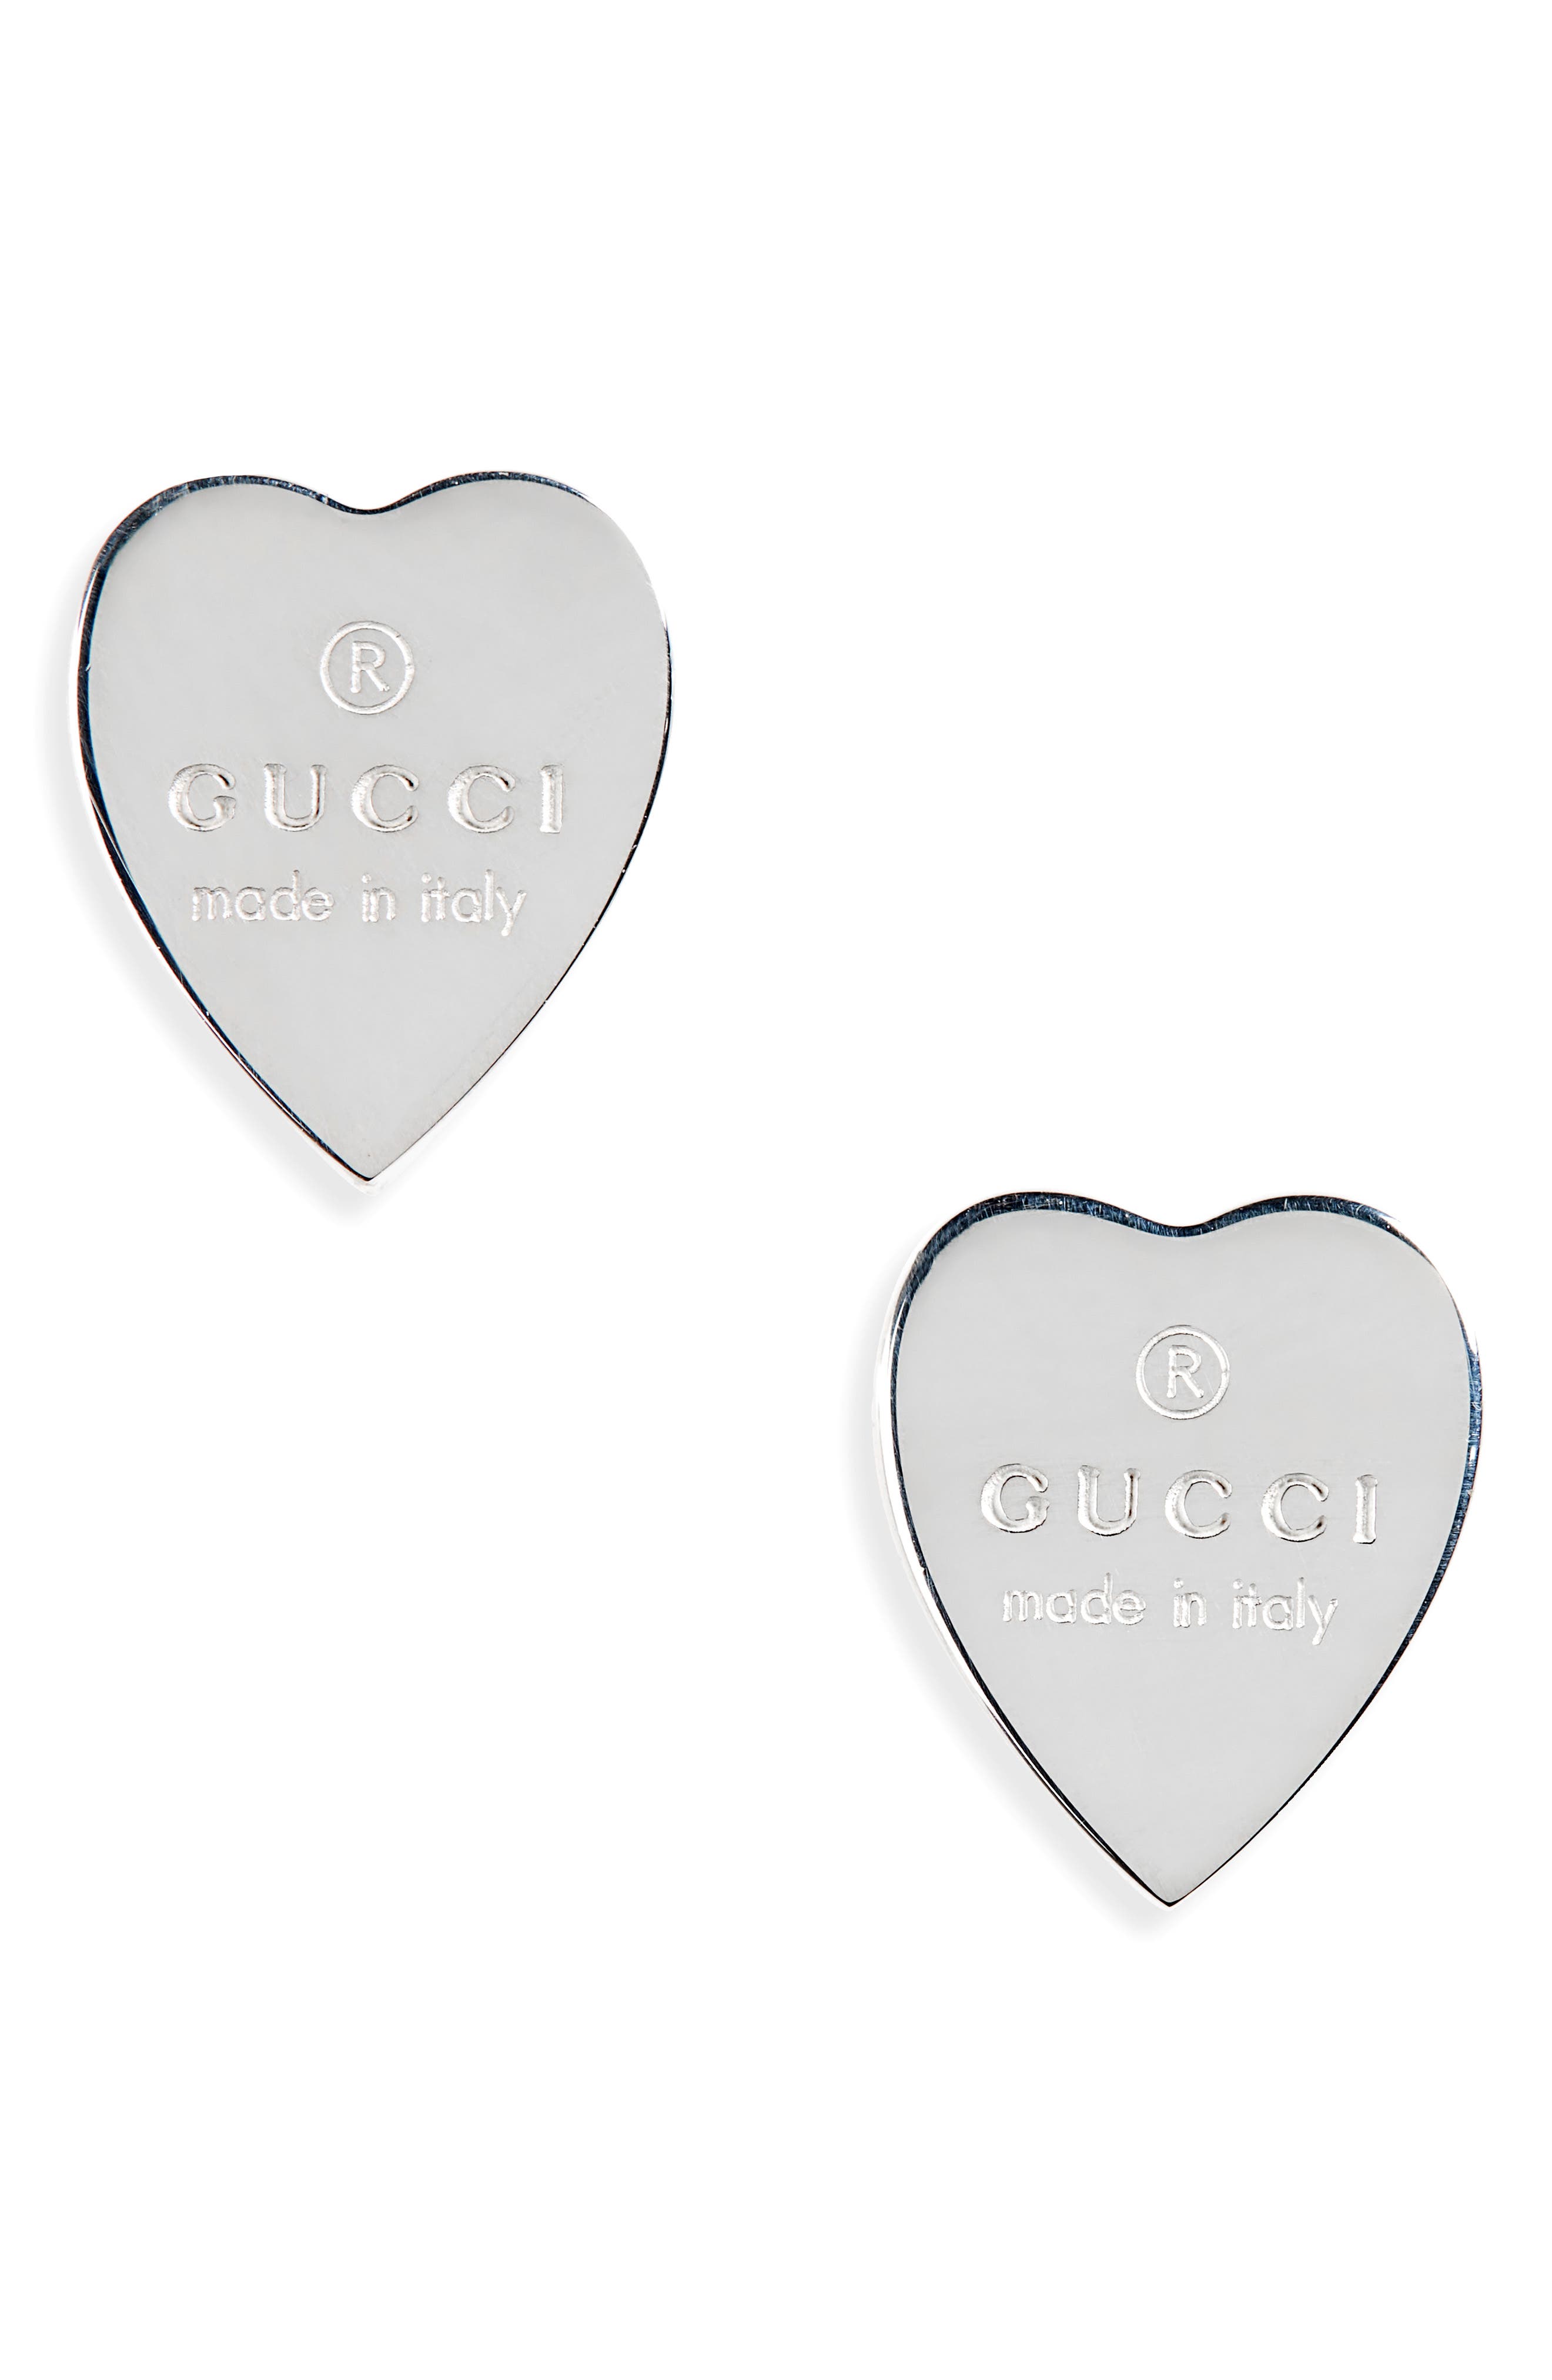 gucci trademark heart earrings